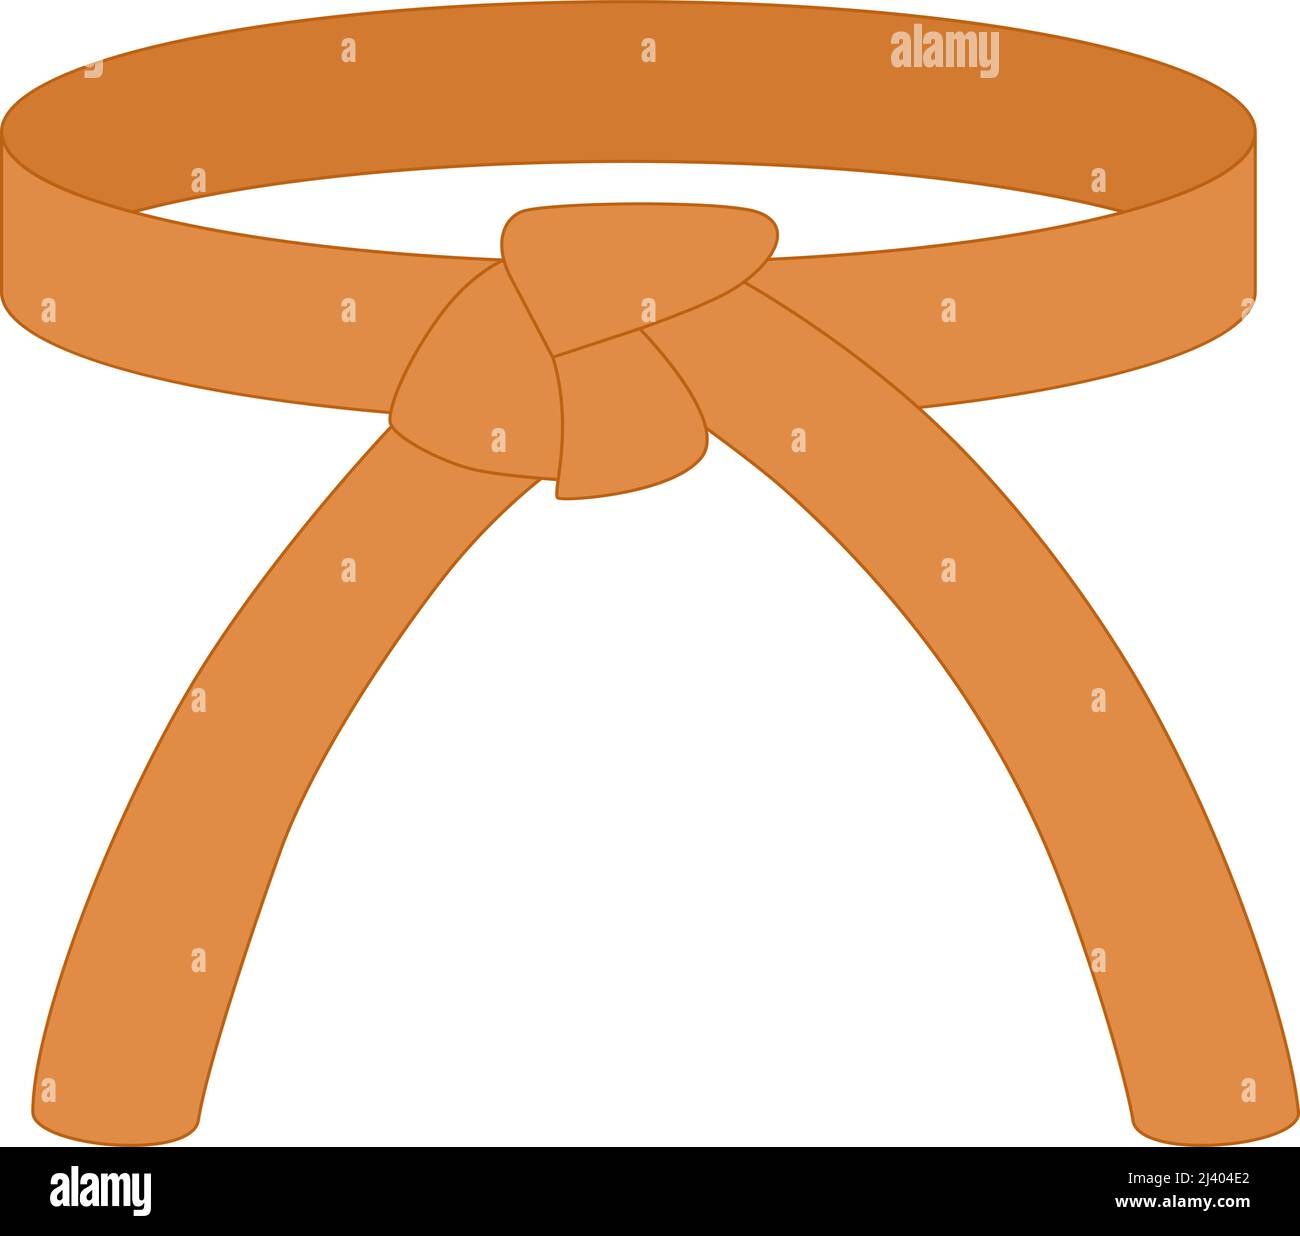 Karate Gürtel orange Farbe isoliert auf weißem Hintergrund. Design-Ikone  der japanischen Kampfkunst im flachen Stil. Vektorgrafik Stock-Vektorgrafik  - Alamy